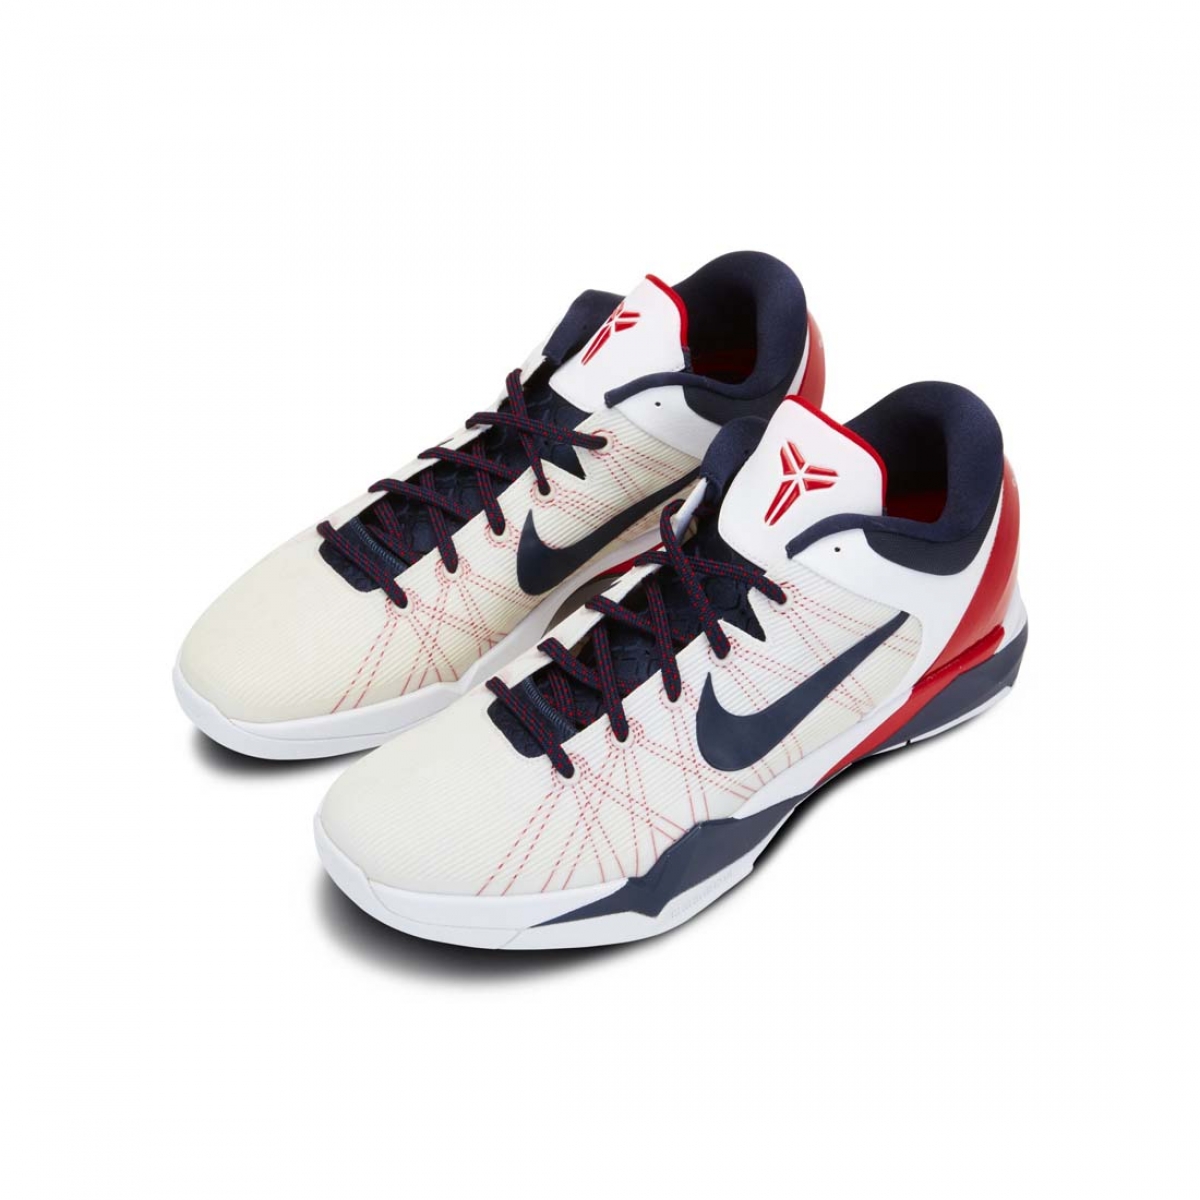 Nike Zoom Kobe 7 System 'Olympic' 488371-102 - KICKS CREW